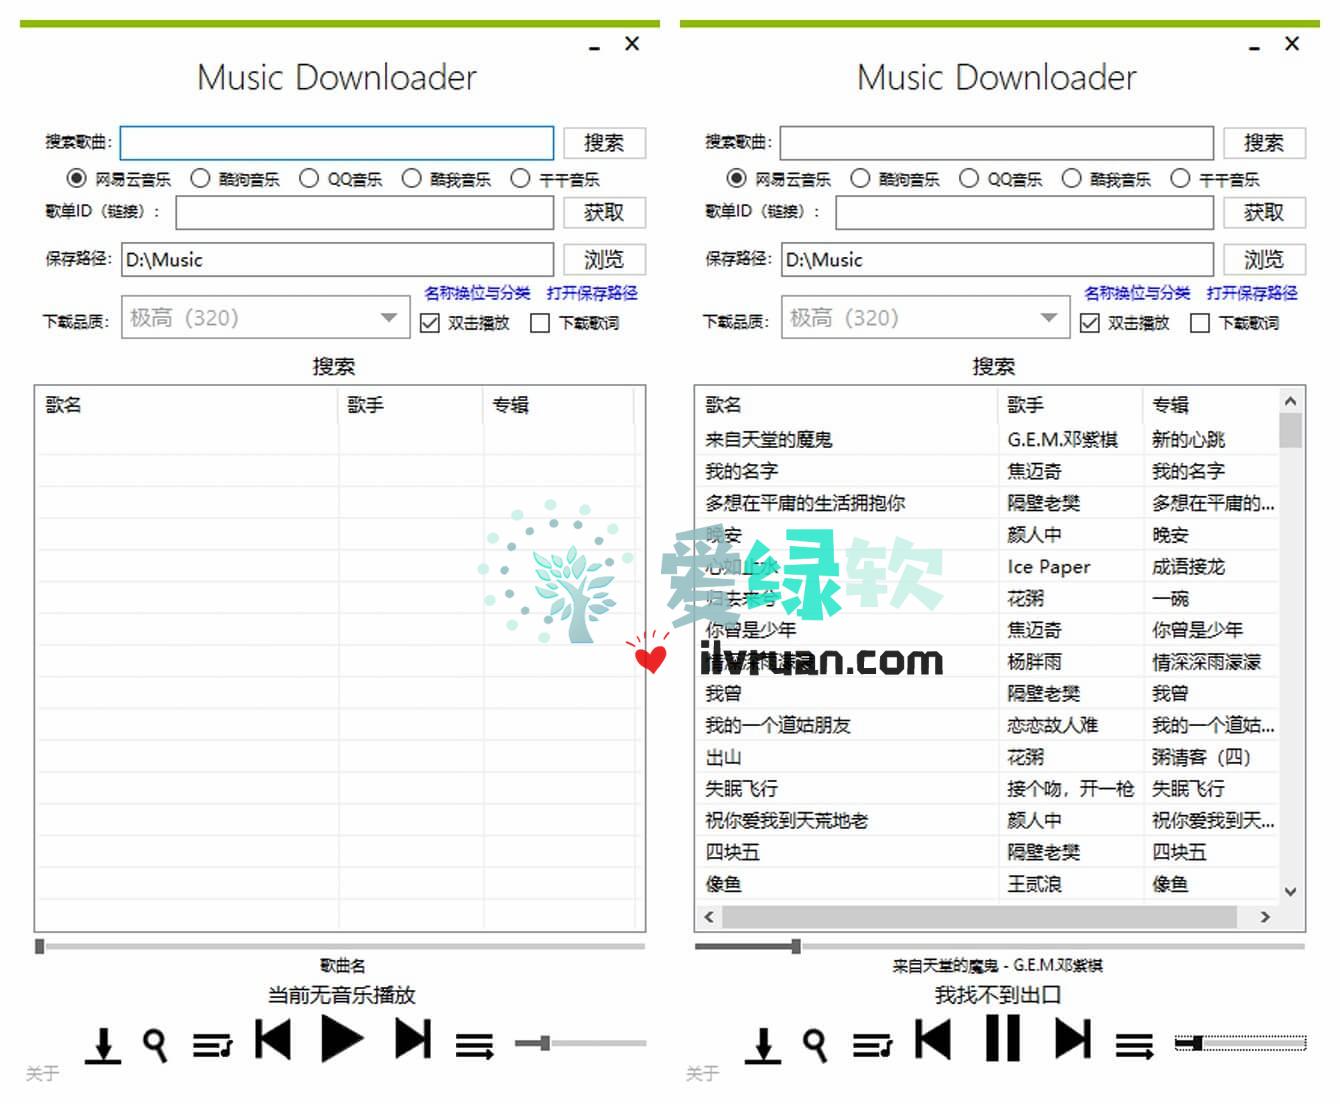 音乐下载器 Music Downloader v1.3.7 开源版  